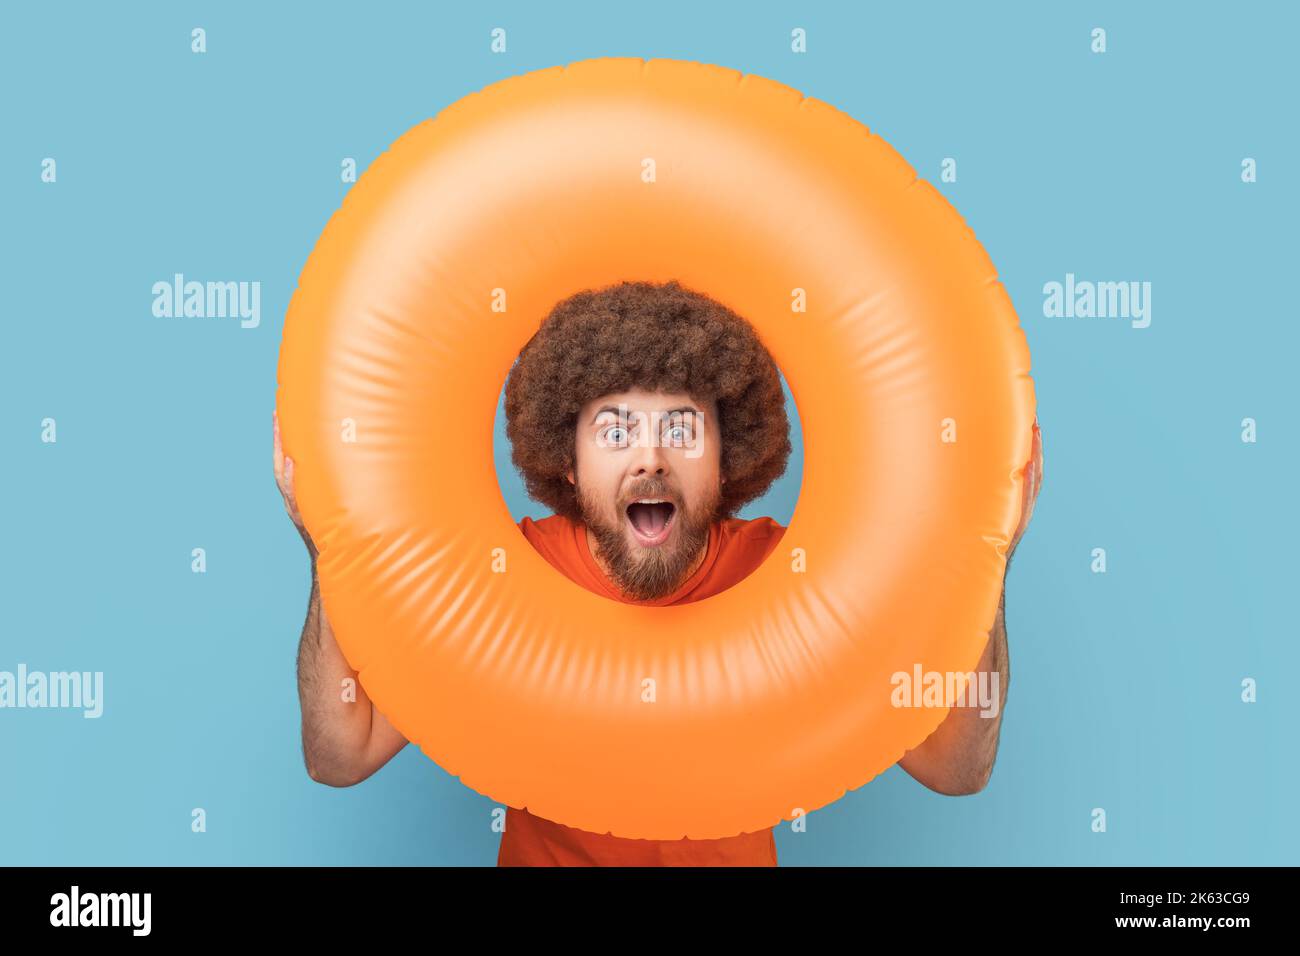 Porträt eines Mannes mit schockierter Gesichtsausdruck, der durch einen leuchtend orangefarbenen Gummiring schaut, die Kamera mit offenem Mund anschaut, überrascht vom Urlaub. Innenaufnahme des Studios isoliert auf blauem Hintergrund. Stockfoto